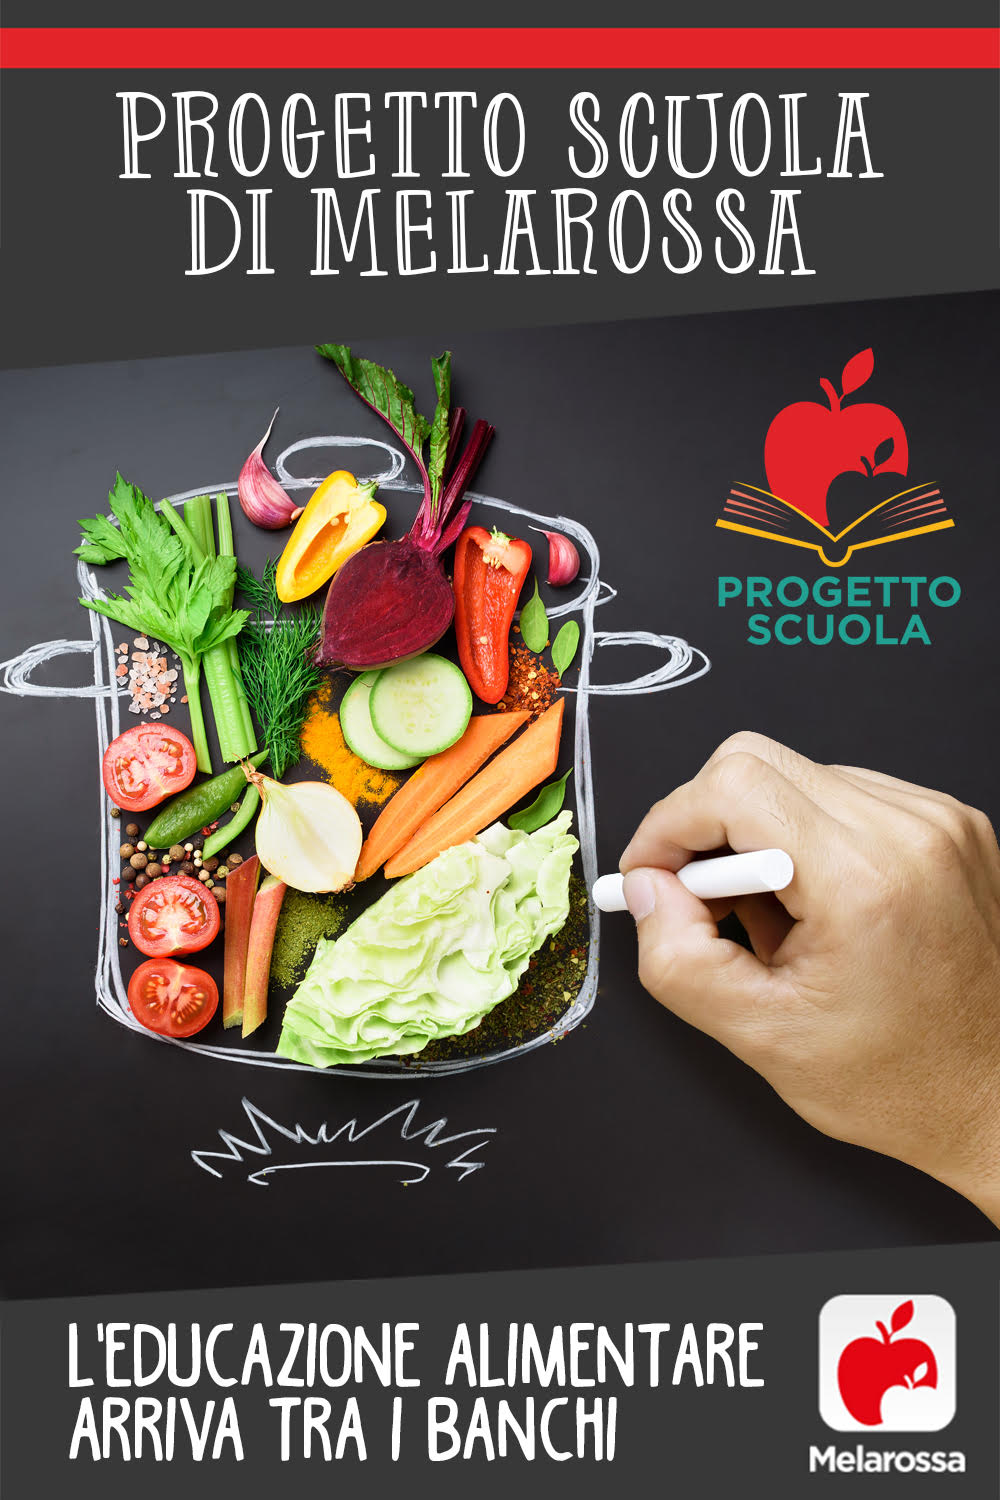 progetto scuola Melarossa: educazione alimentare per le scuole